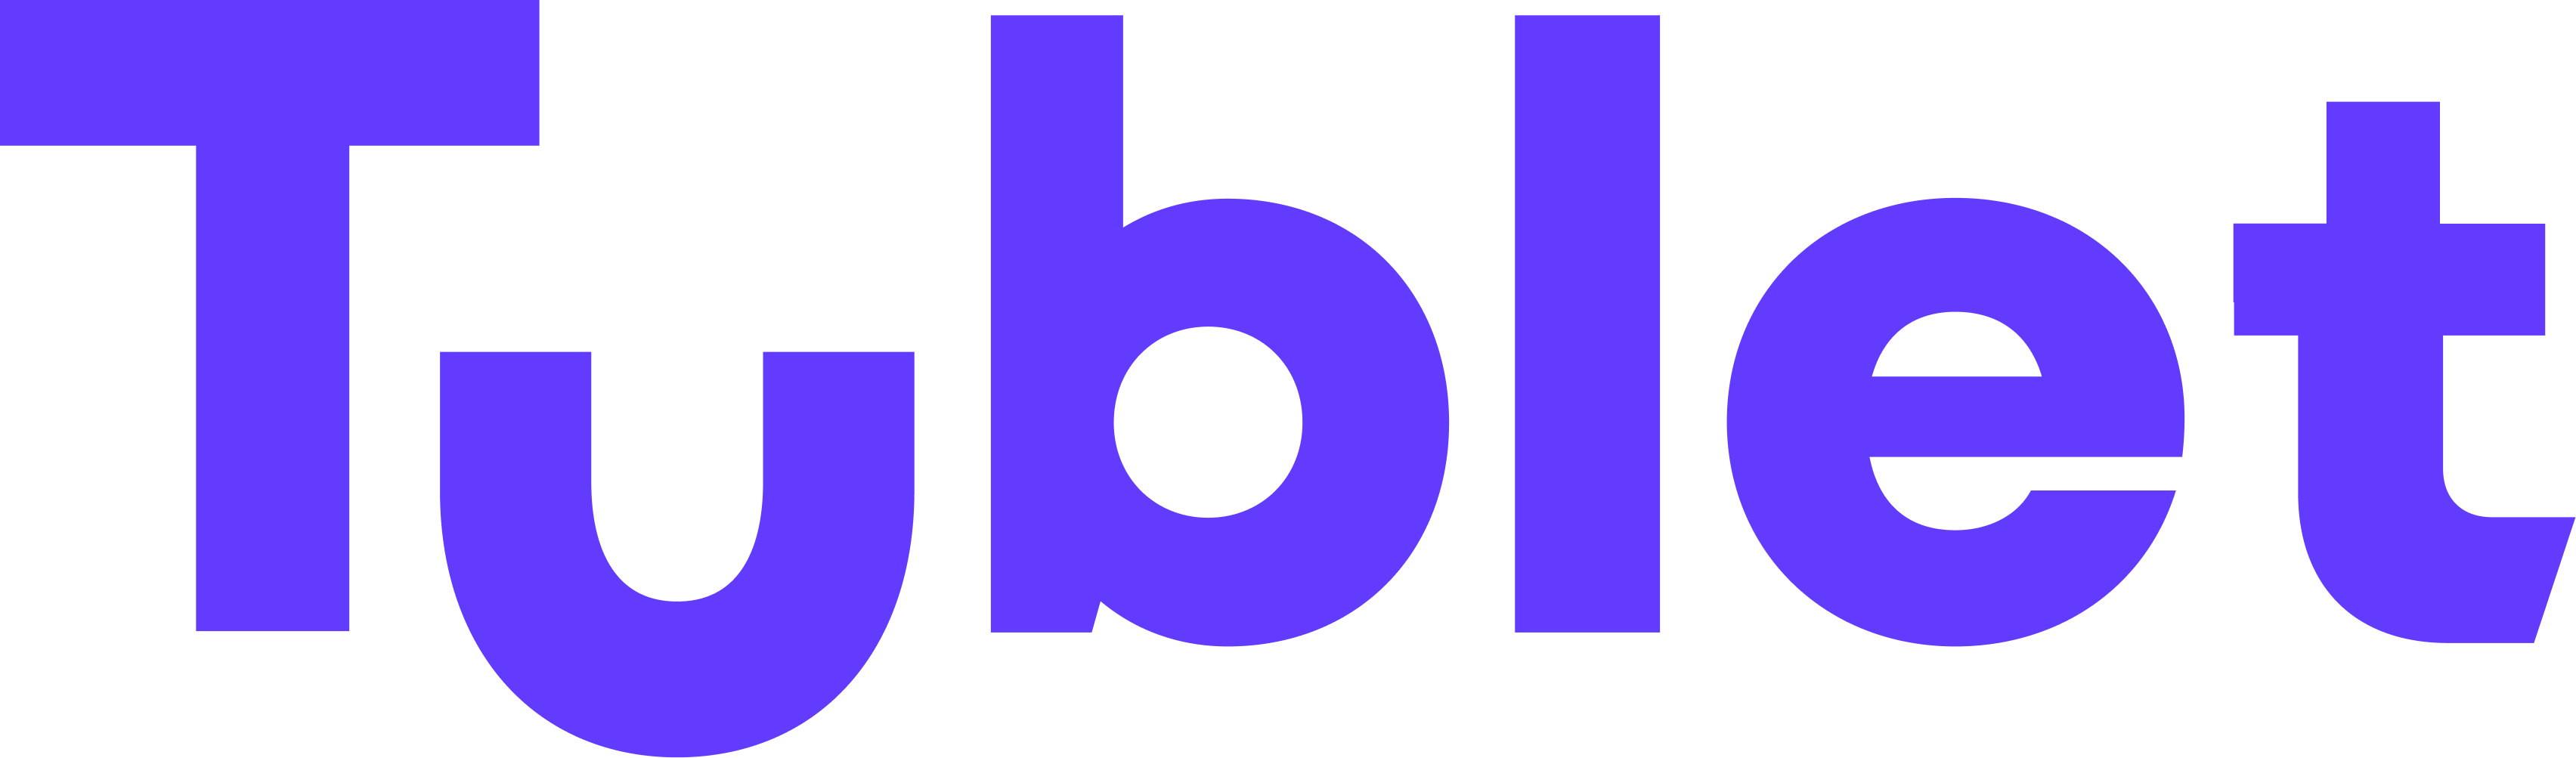 튜블릿코리아/Tublet Korea Logo